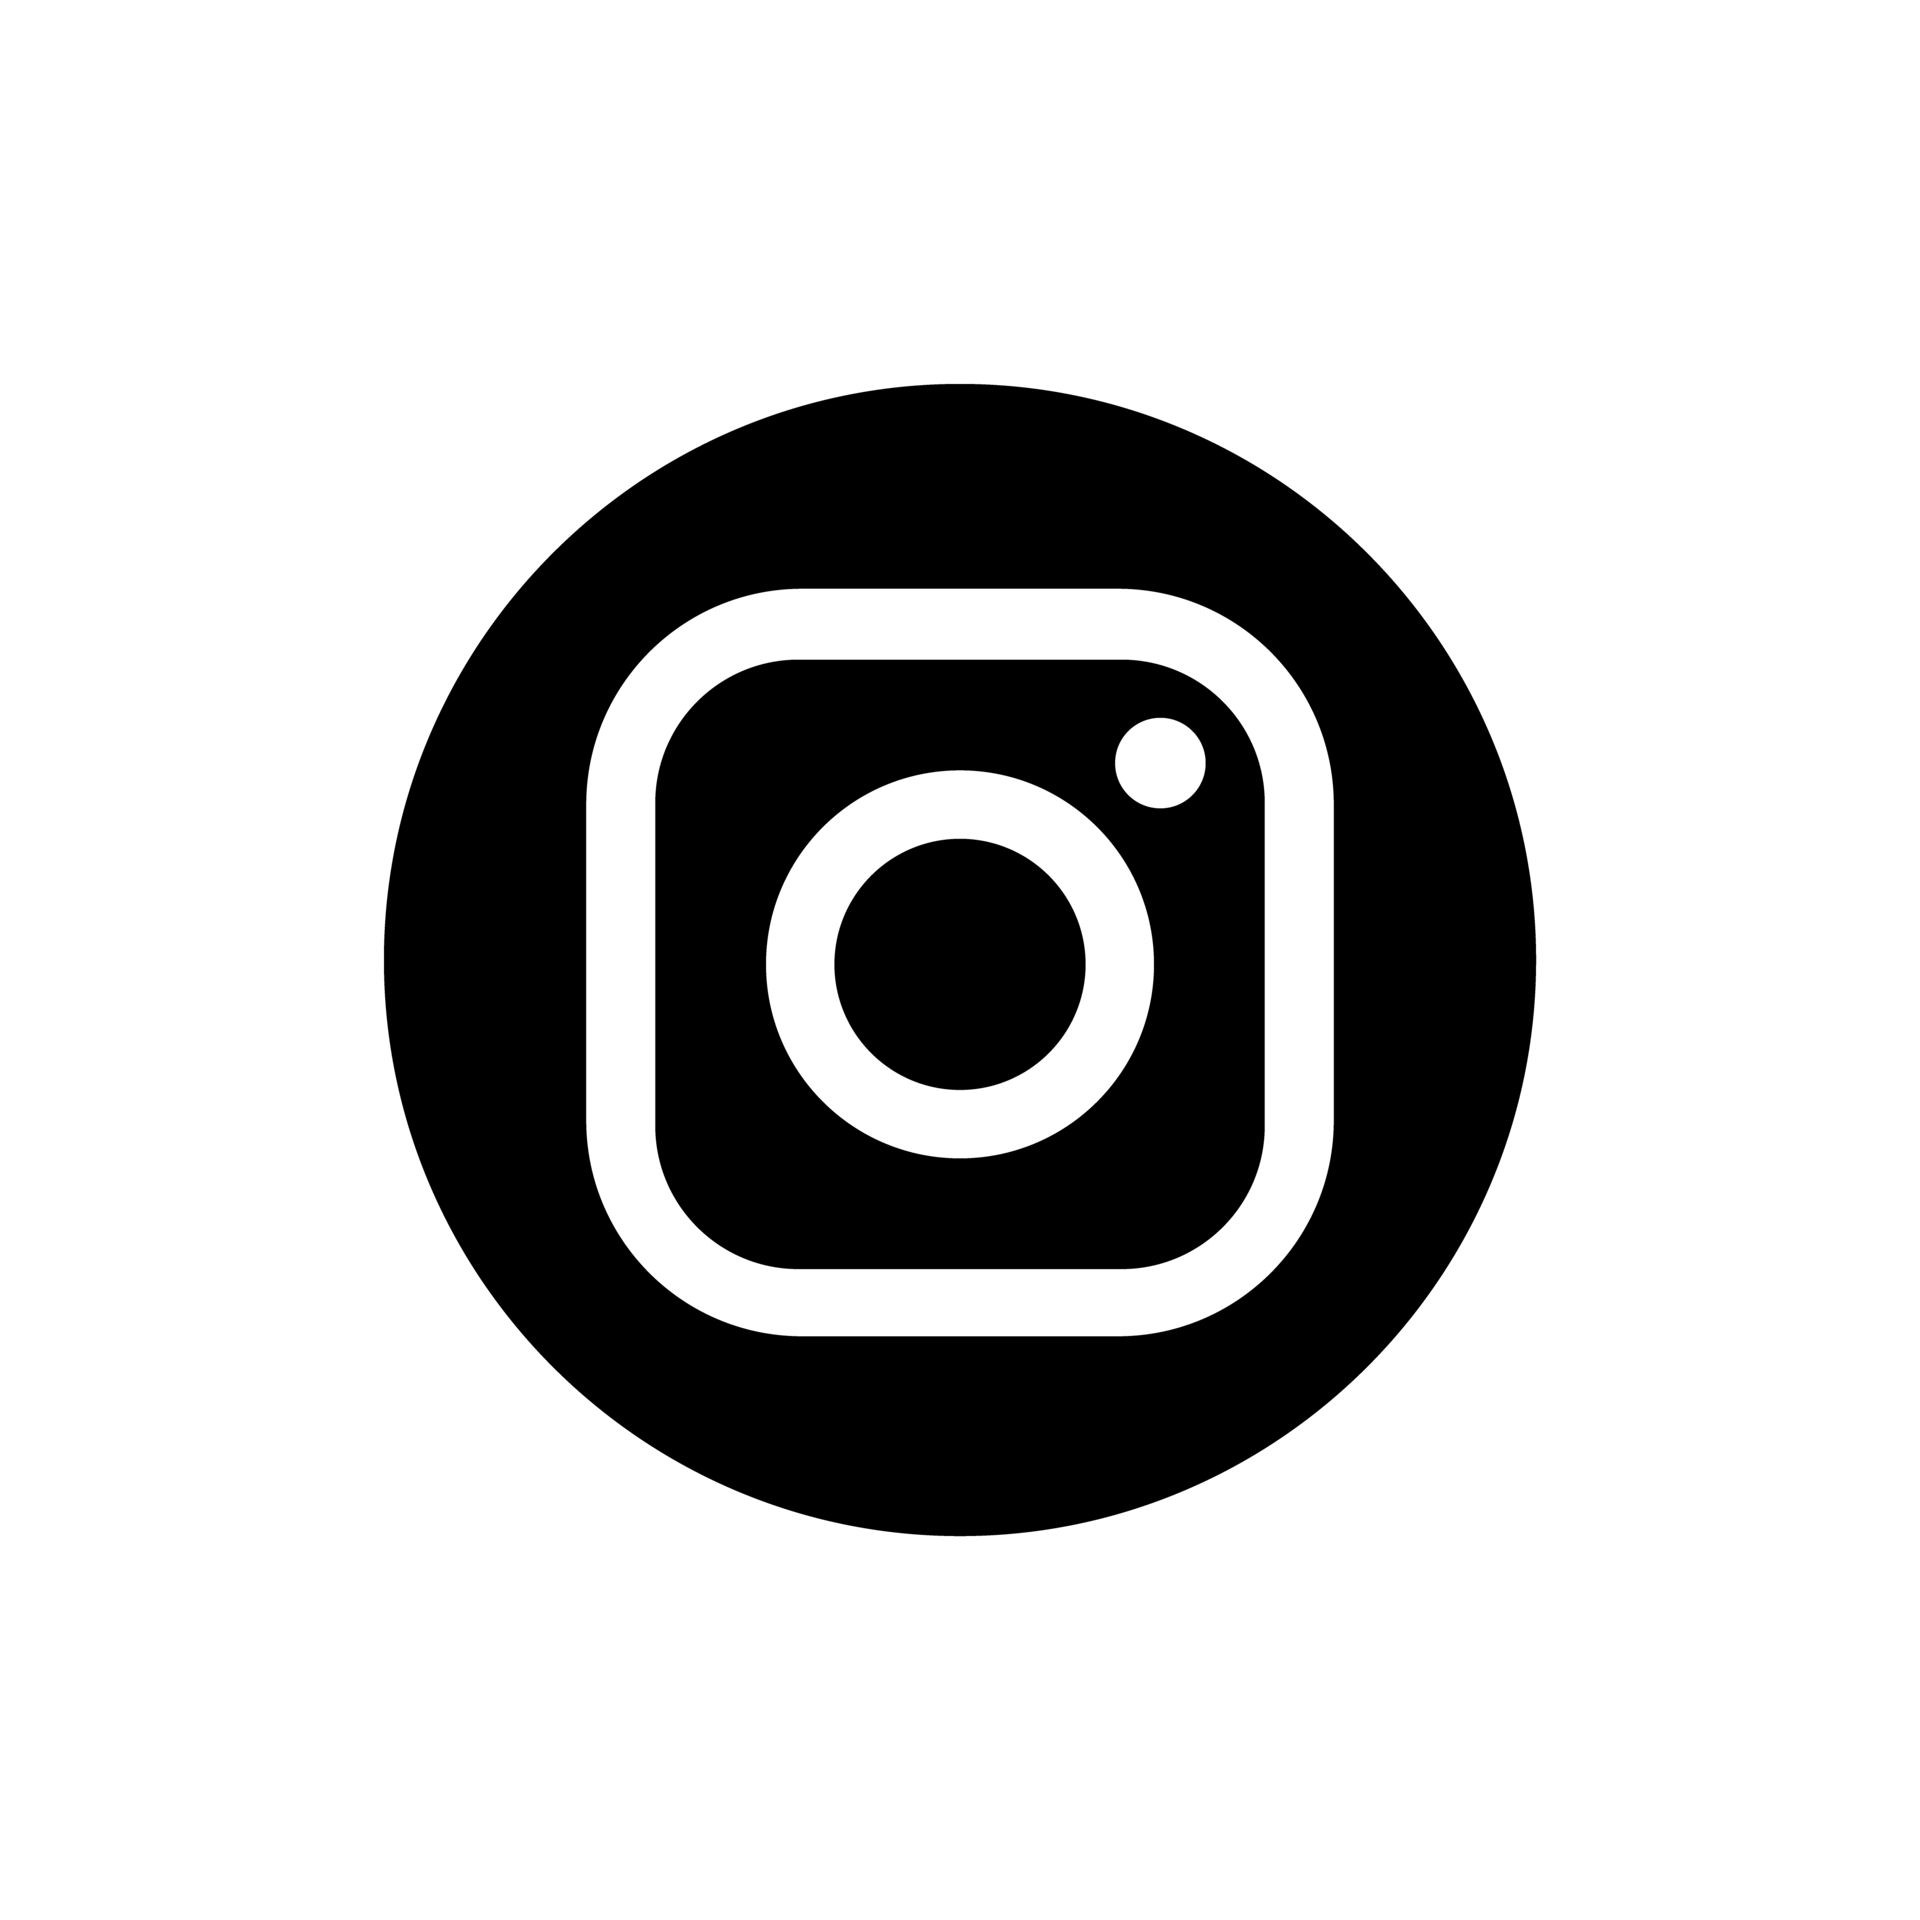 logotipo do instagram png ícone do instagram transparente 18930473 PNG